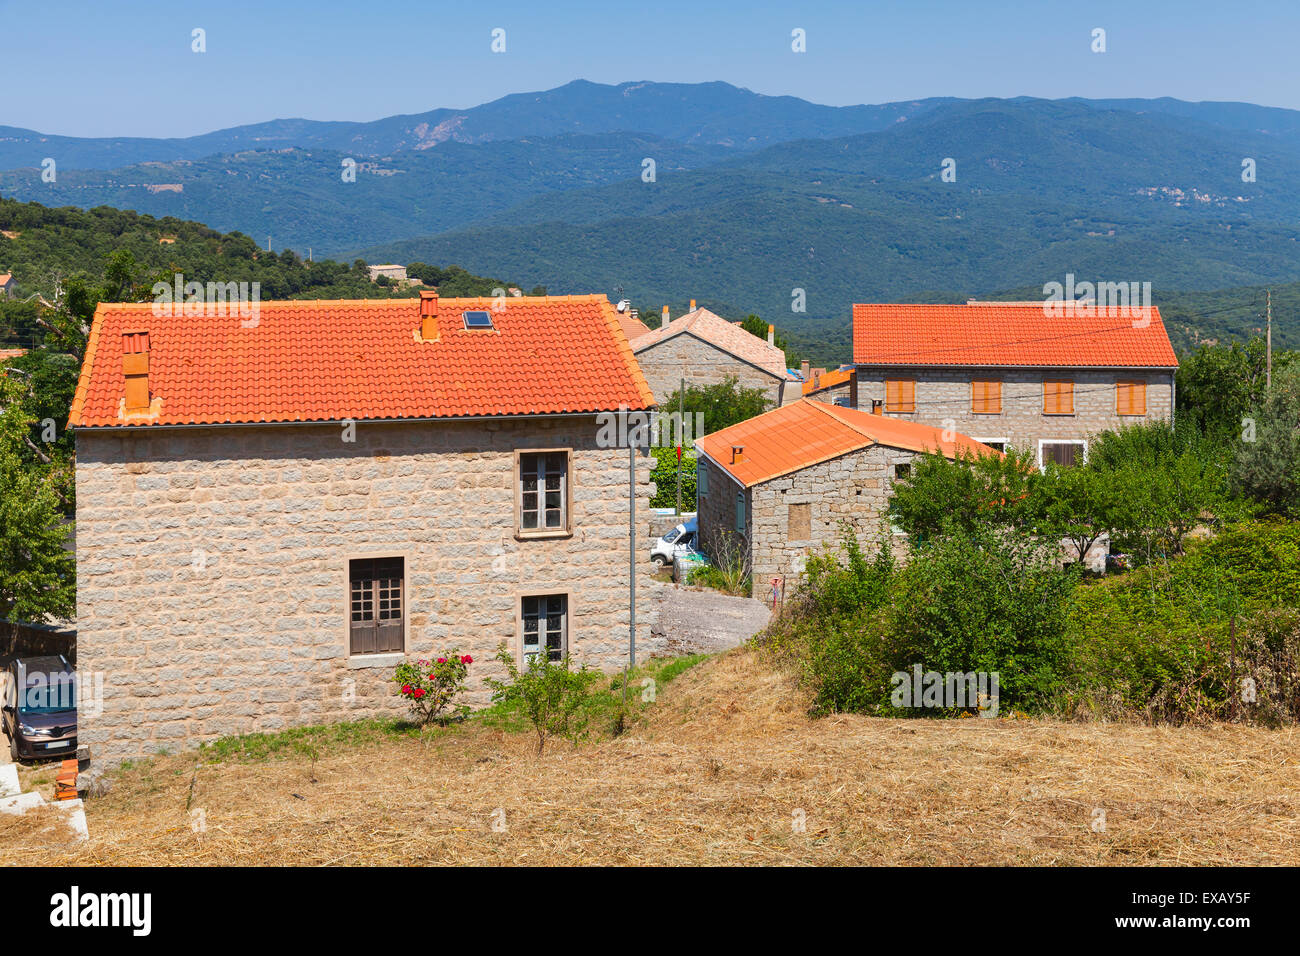 Villaggio Corso paesaggio, vivendo case con tetti in tegole rosse. Petreto-Bicchisano, Corsica, Francia Foto Stock